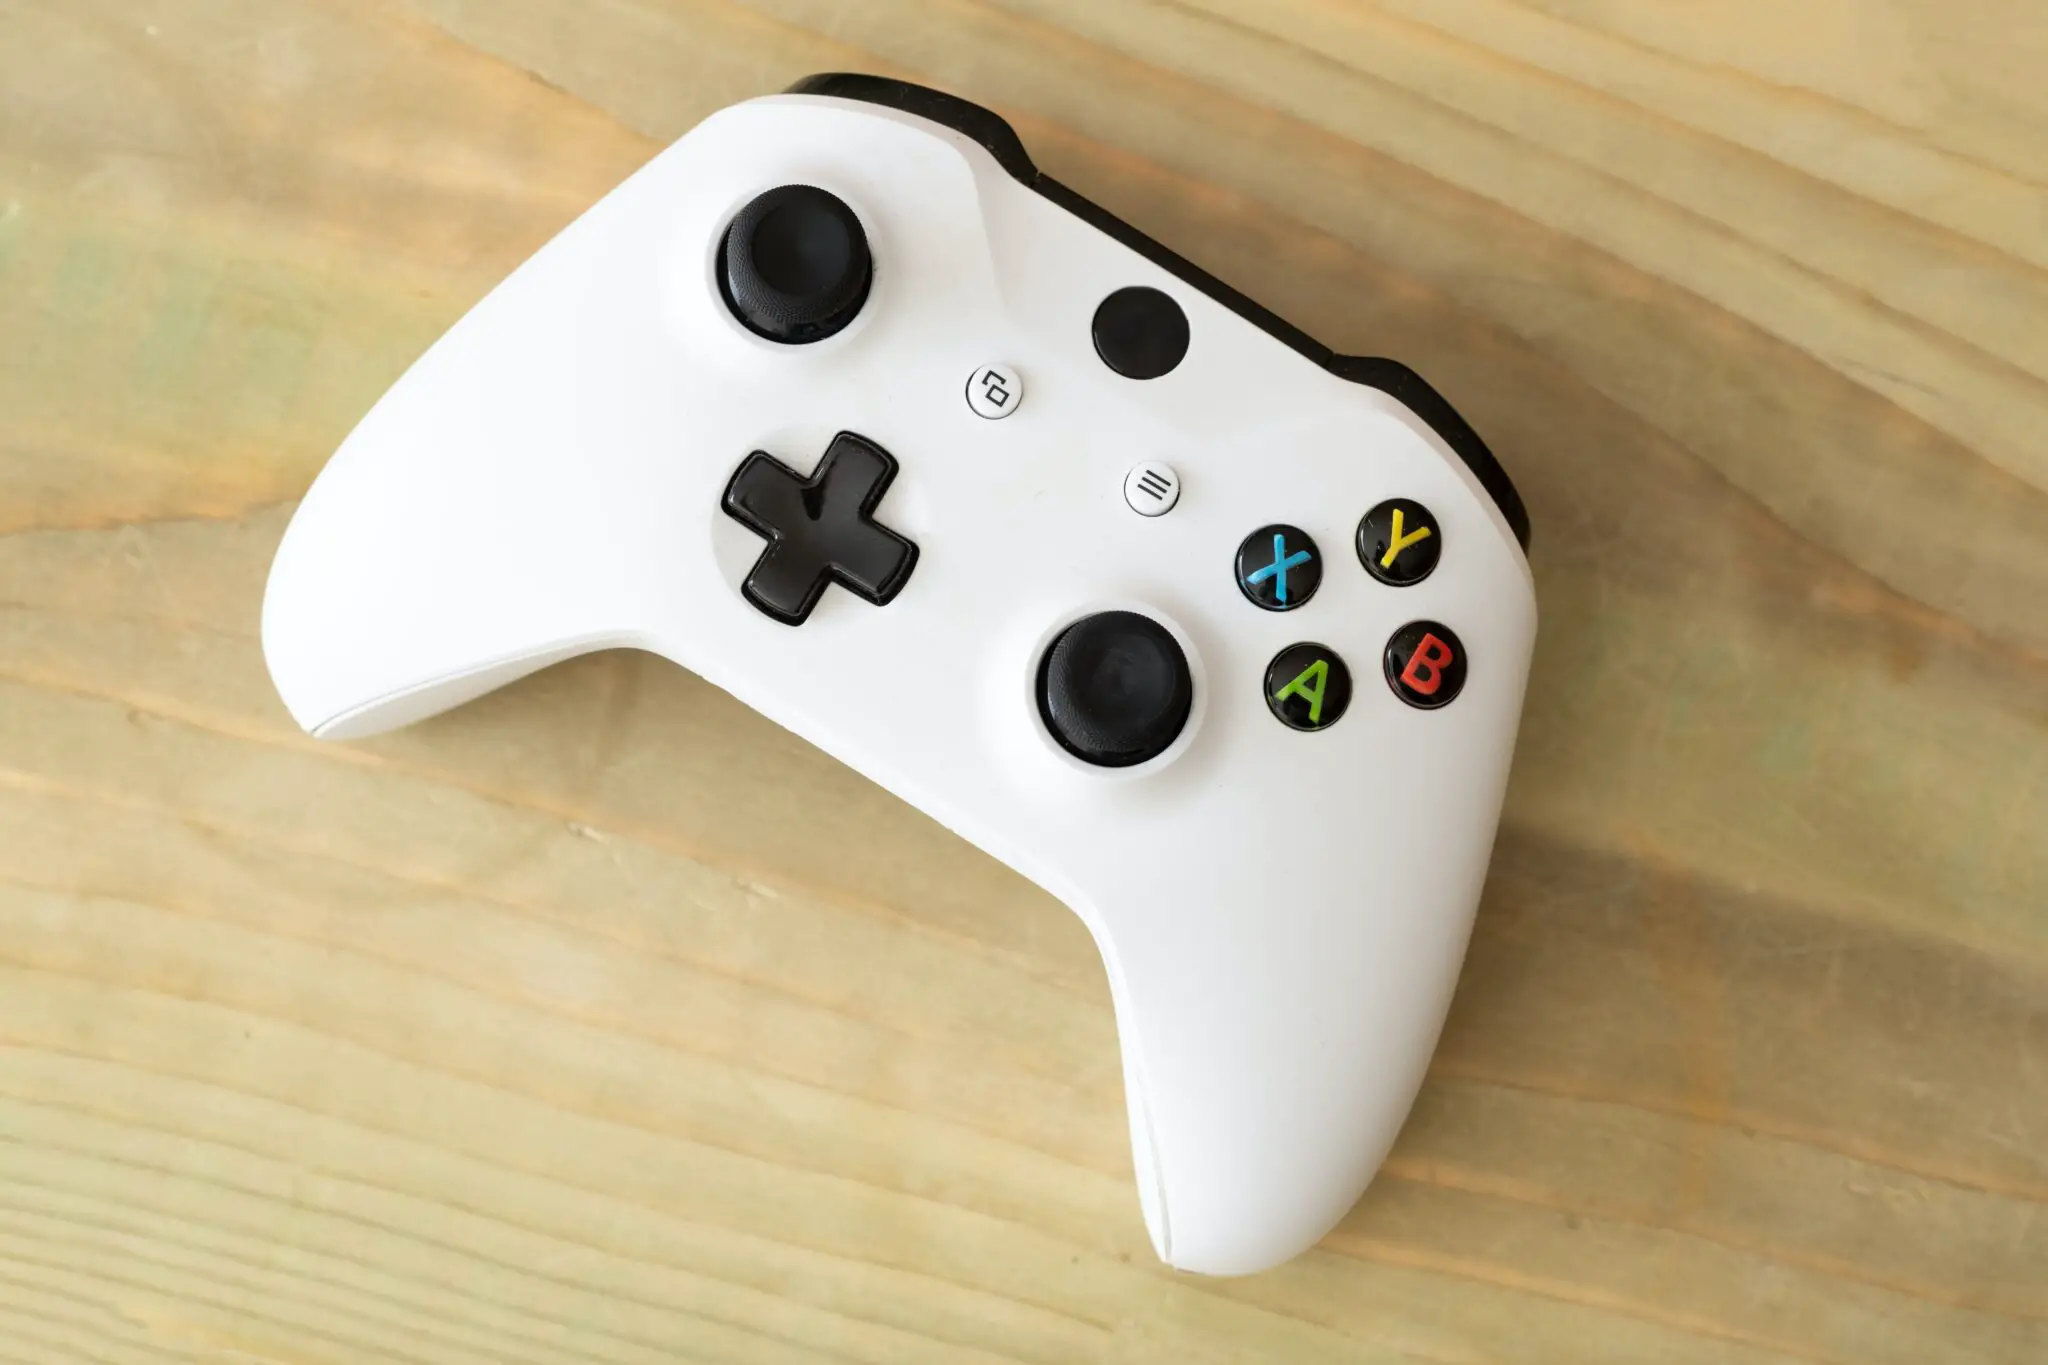 ¿Cargar un control de Xbox One con cargador de celular? - 1 - enero 26, 2023